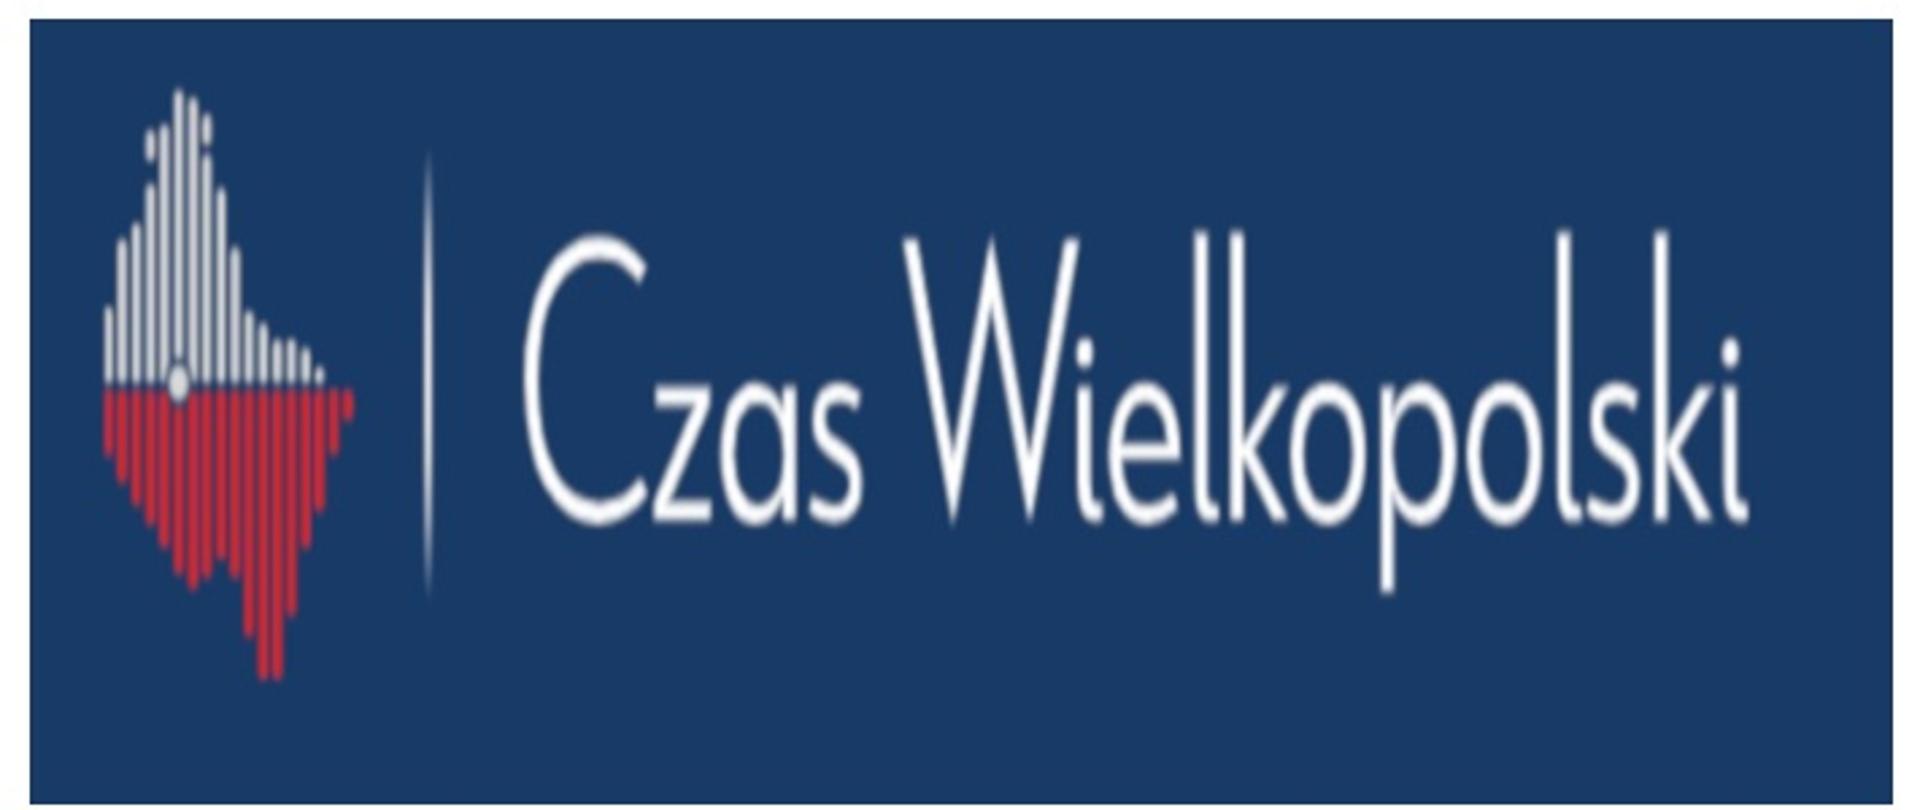 Na zdjęciu widać logo kwartalnika Czas Wielkopolski 